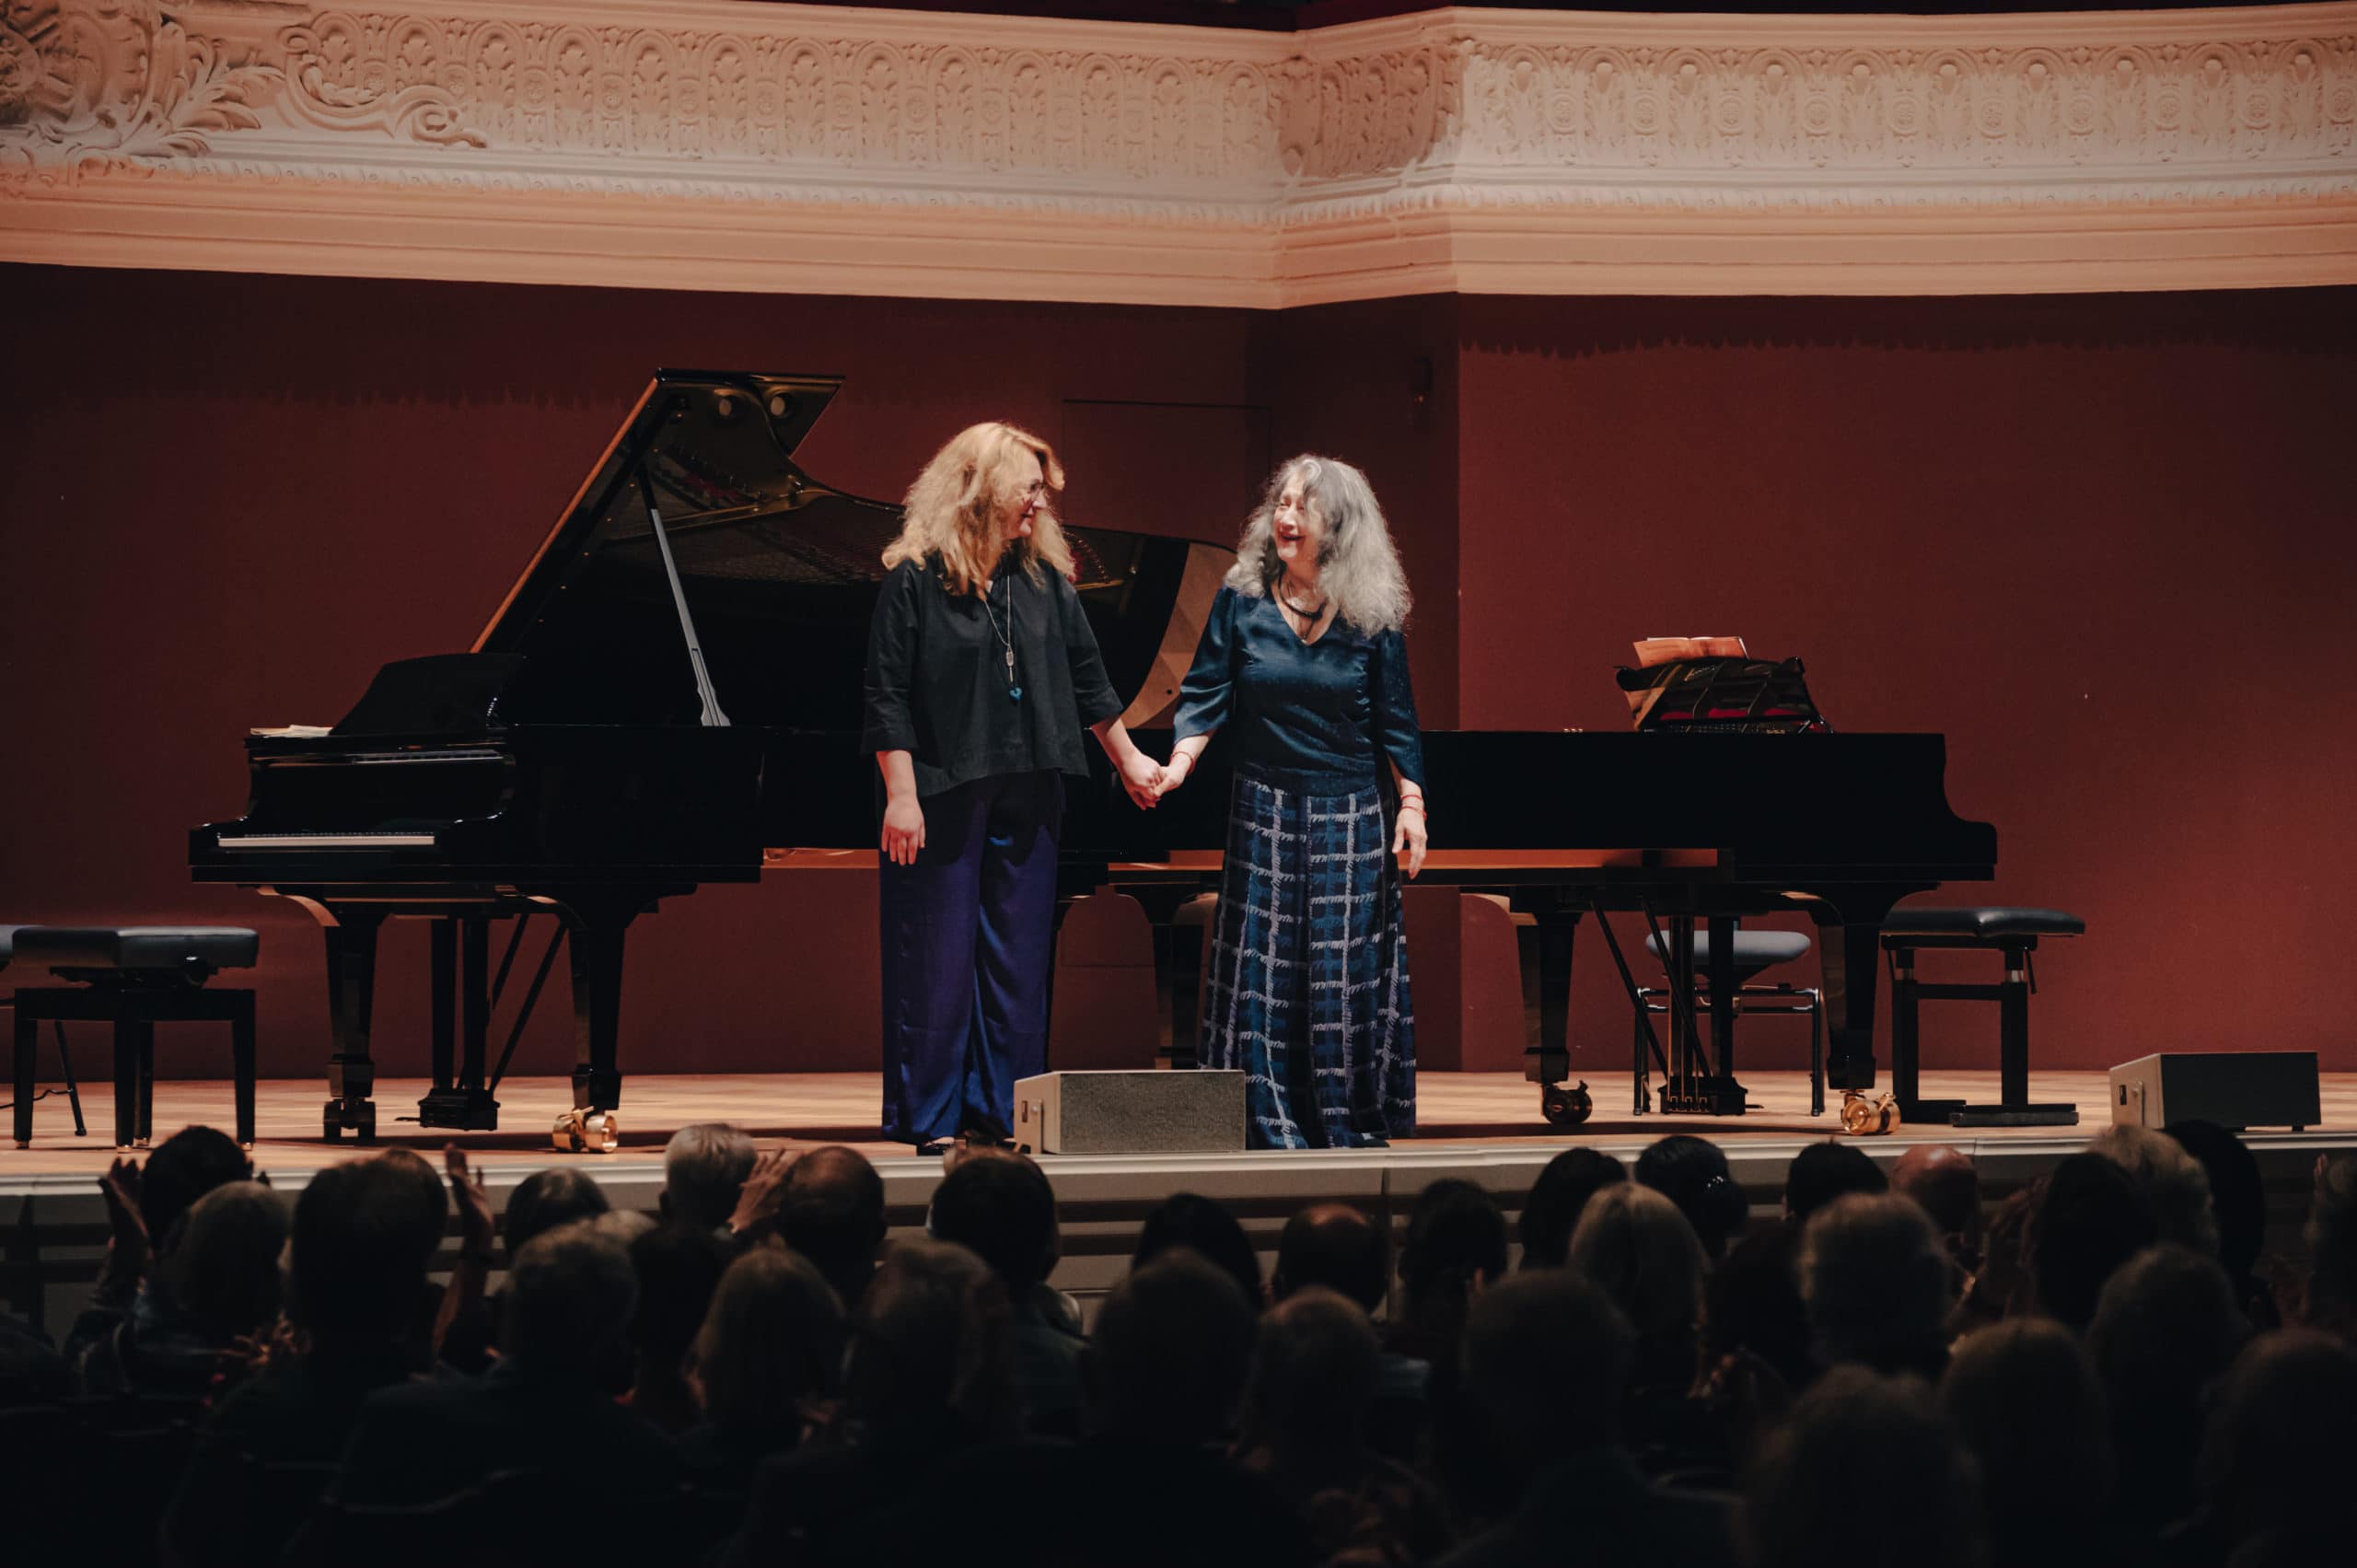 Анастасия Волчок и Марта Аргерих в Базеле на фестивале «Звезды на Рейне» сыграли сюиты N1 и N2 Сергея Рахманинова для 2-х фортепиано. 4 июля 2021 года (Из личного архива)